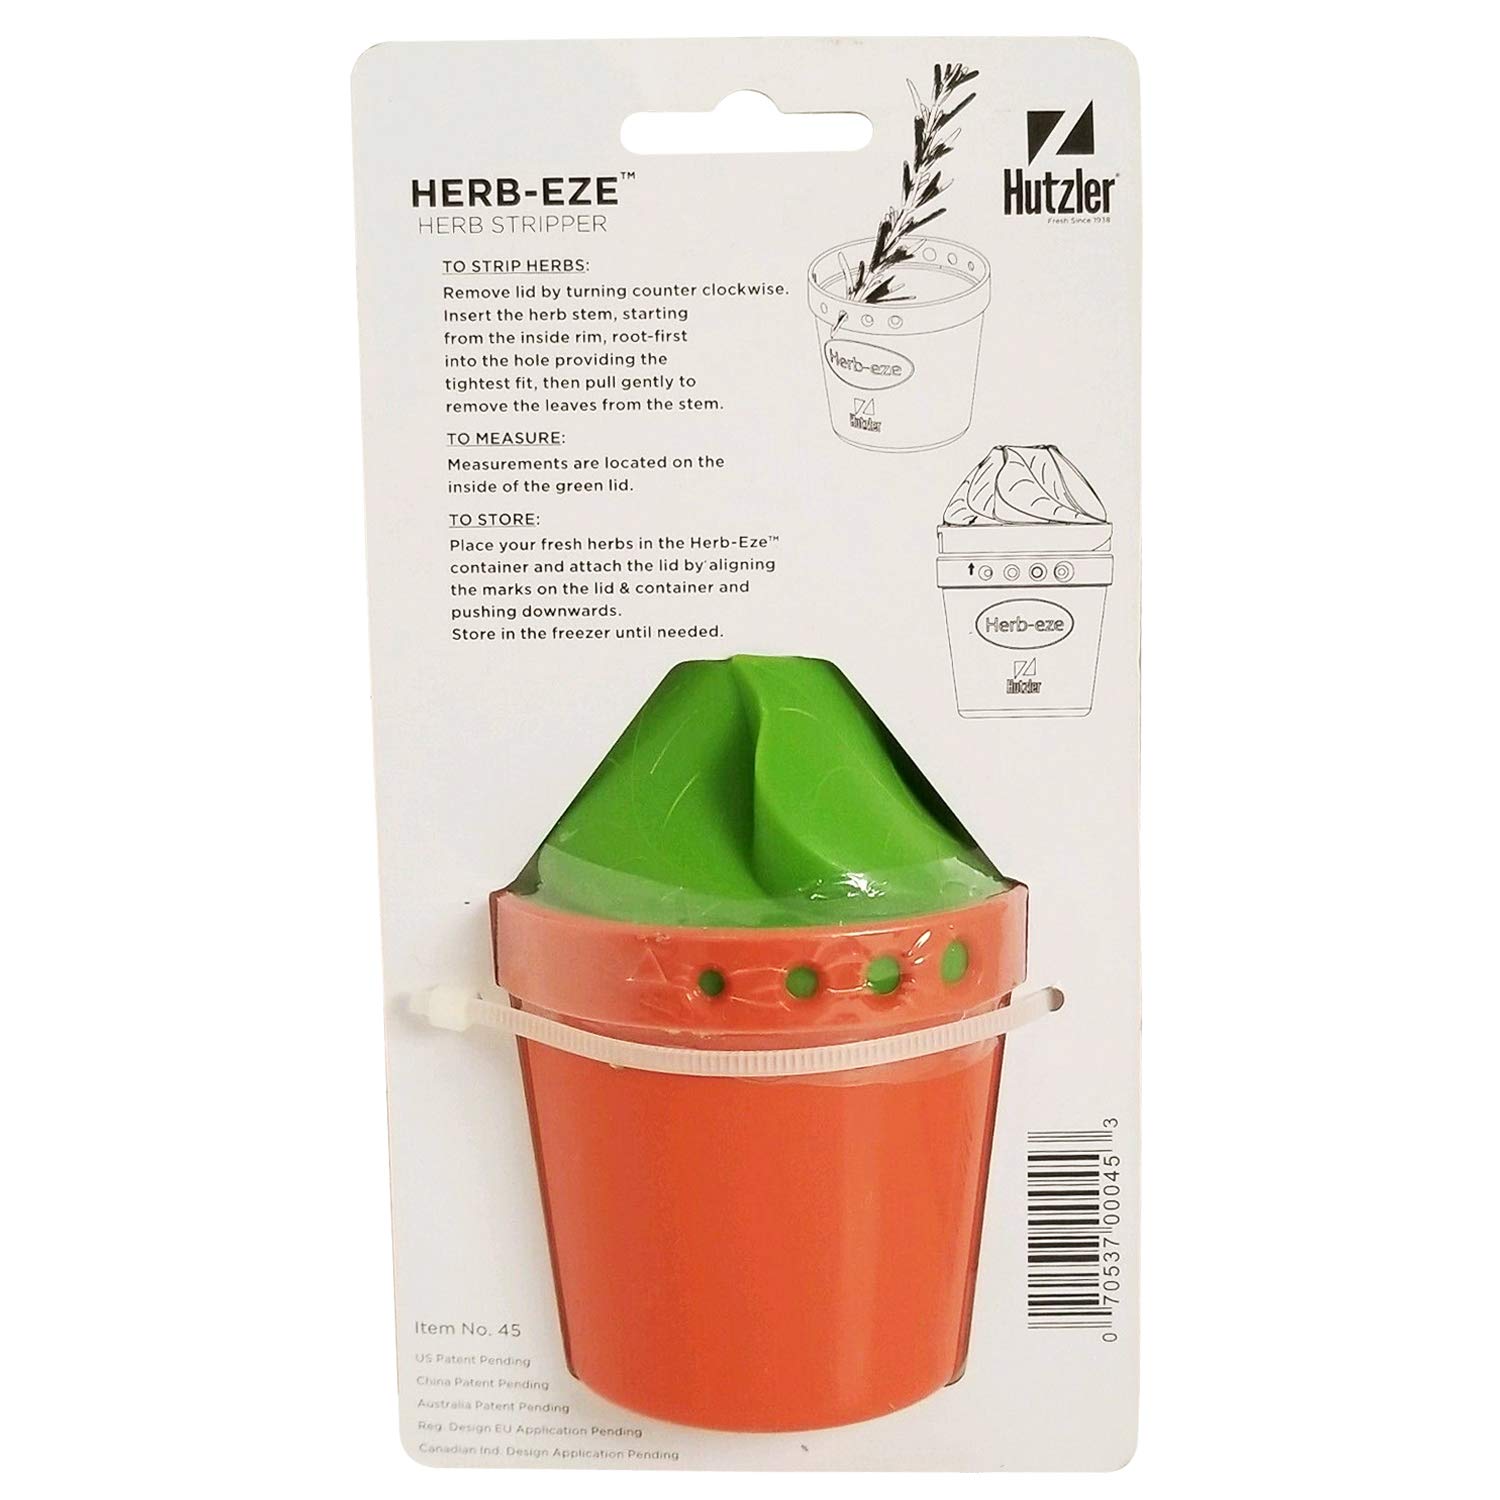 Hutzler Herb-Eze Herb Stripper and Freezer Storage Container, Green/Orange, 2.5" x 3.4"